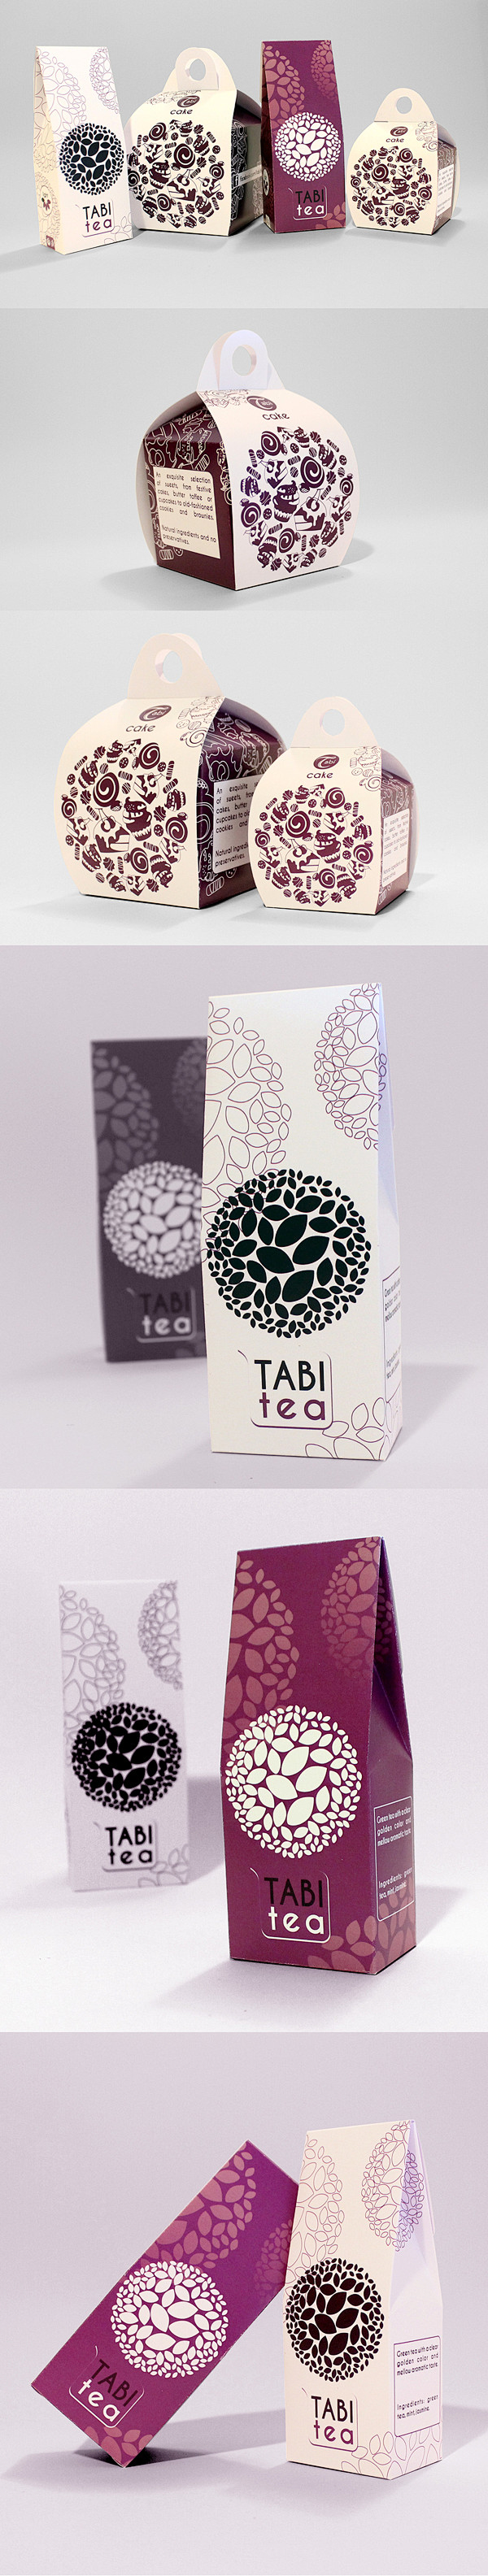 Tabi Cafe 包装设计 设计圈 展...